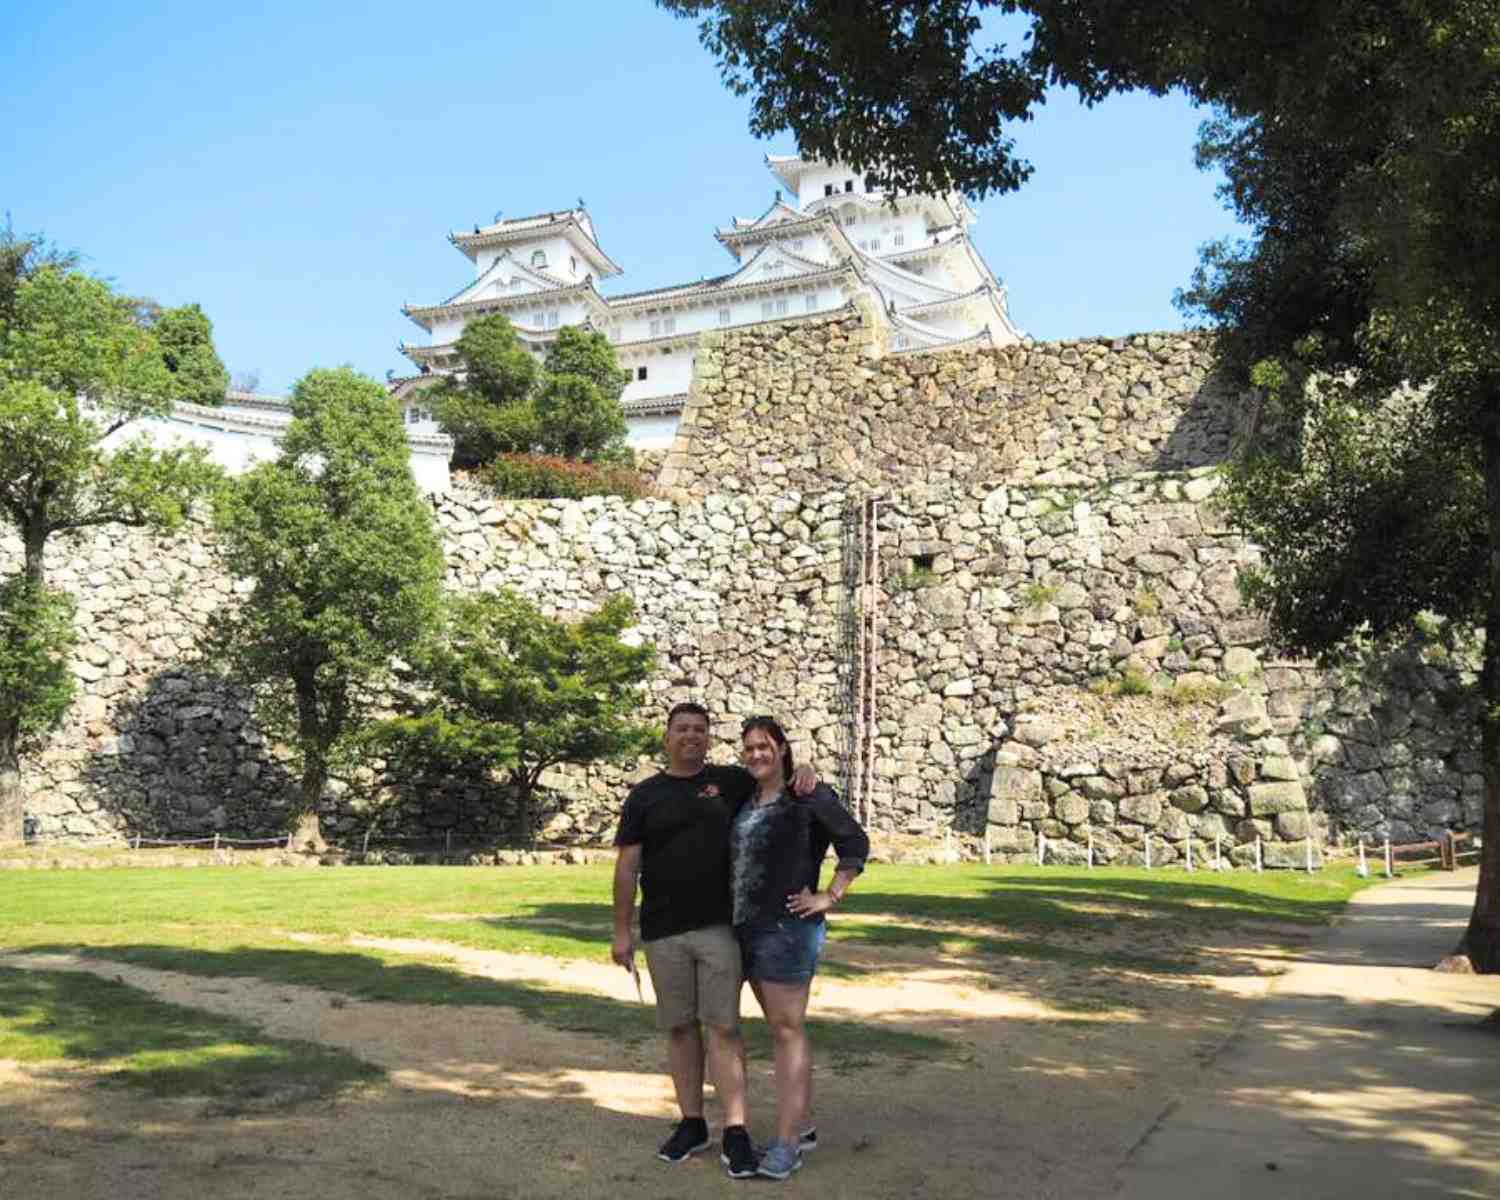 The Sannomaru at Himeji Castle Japan